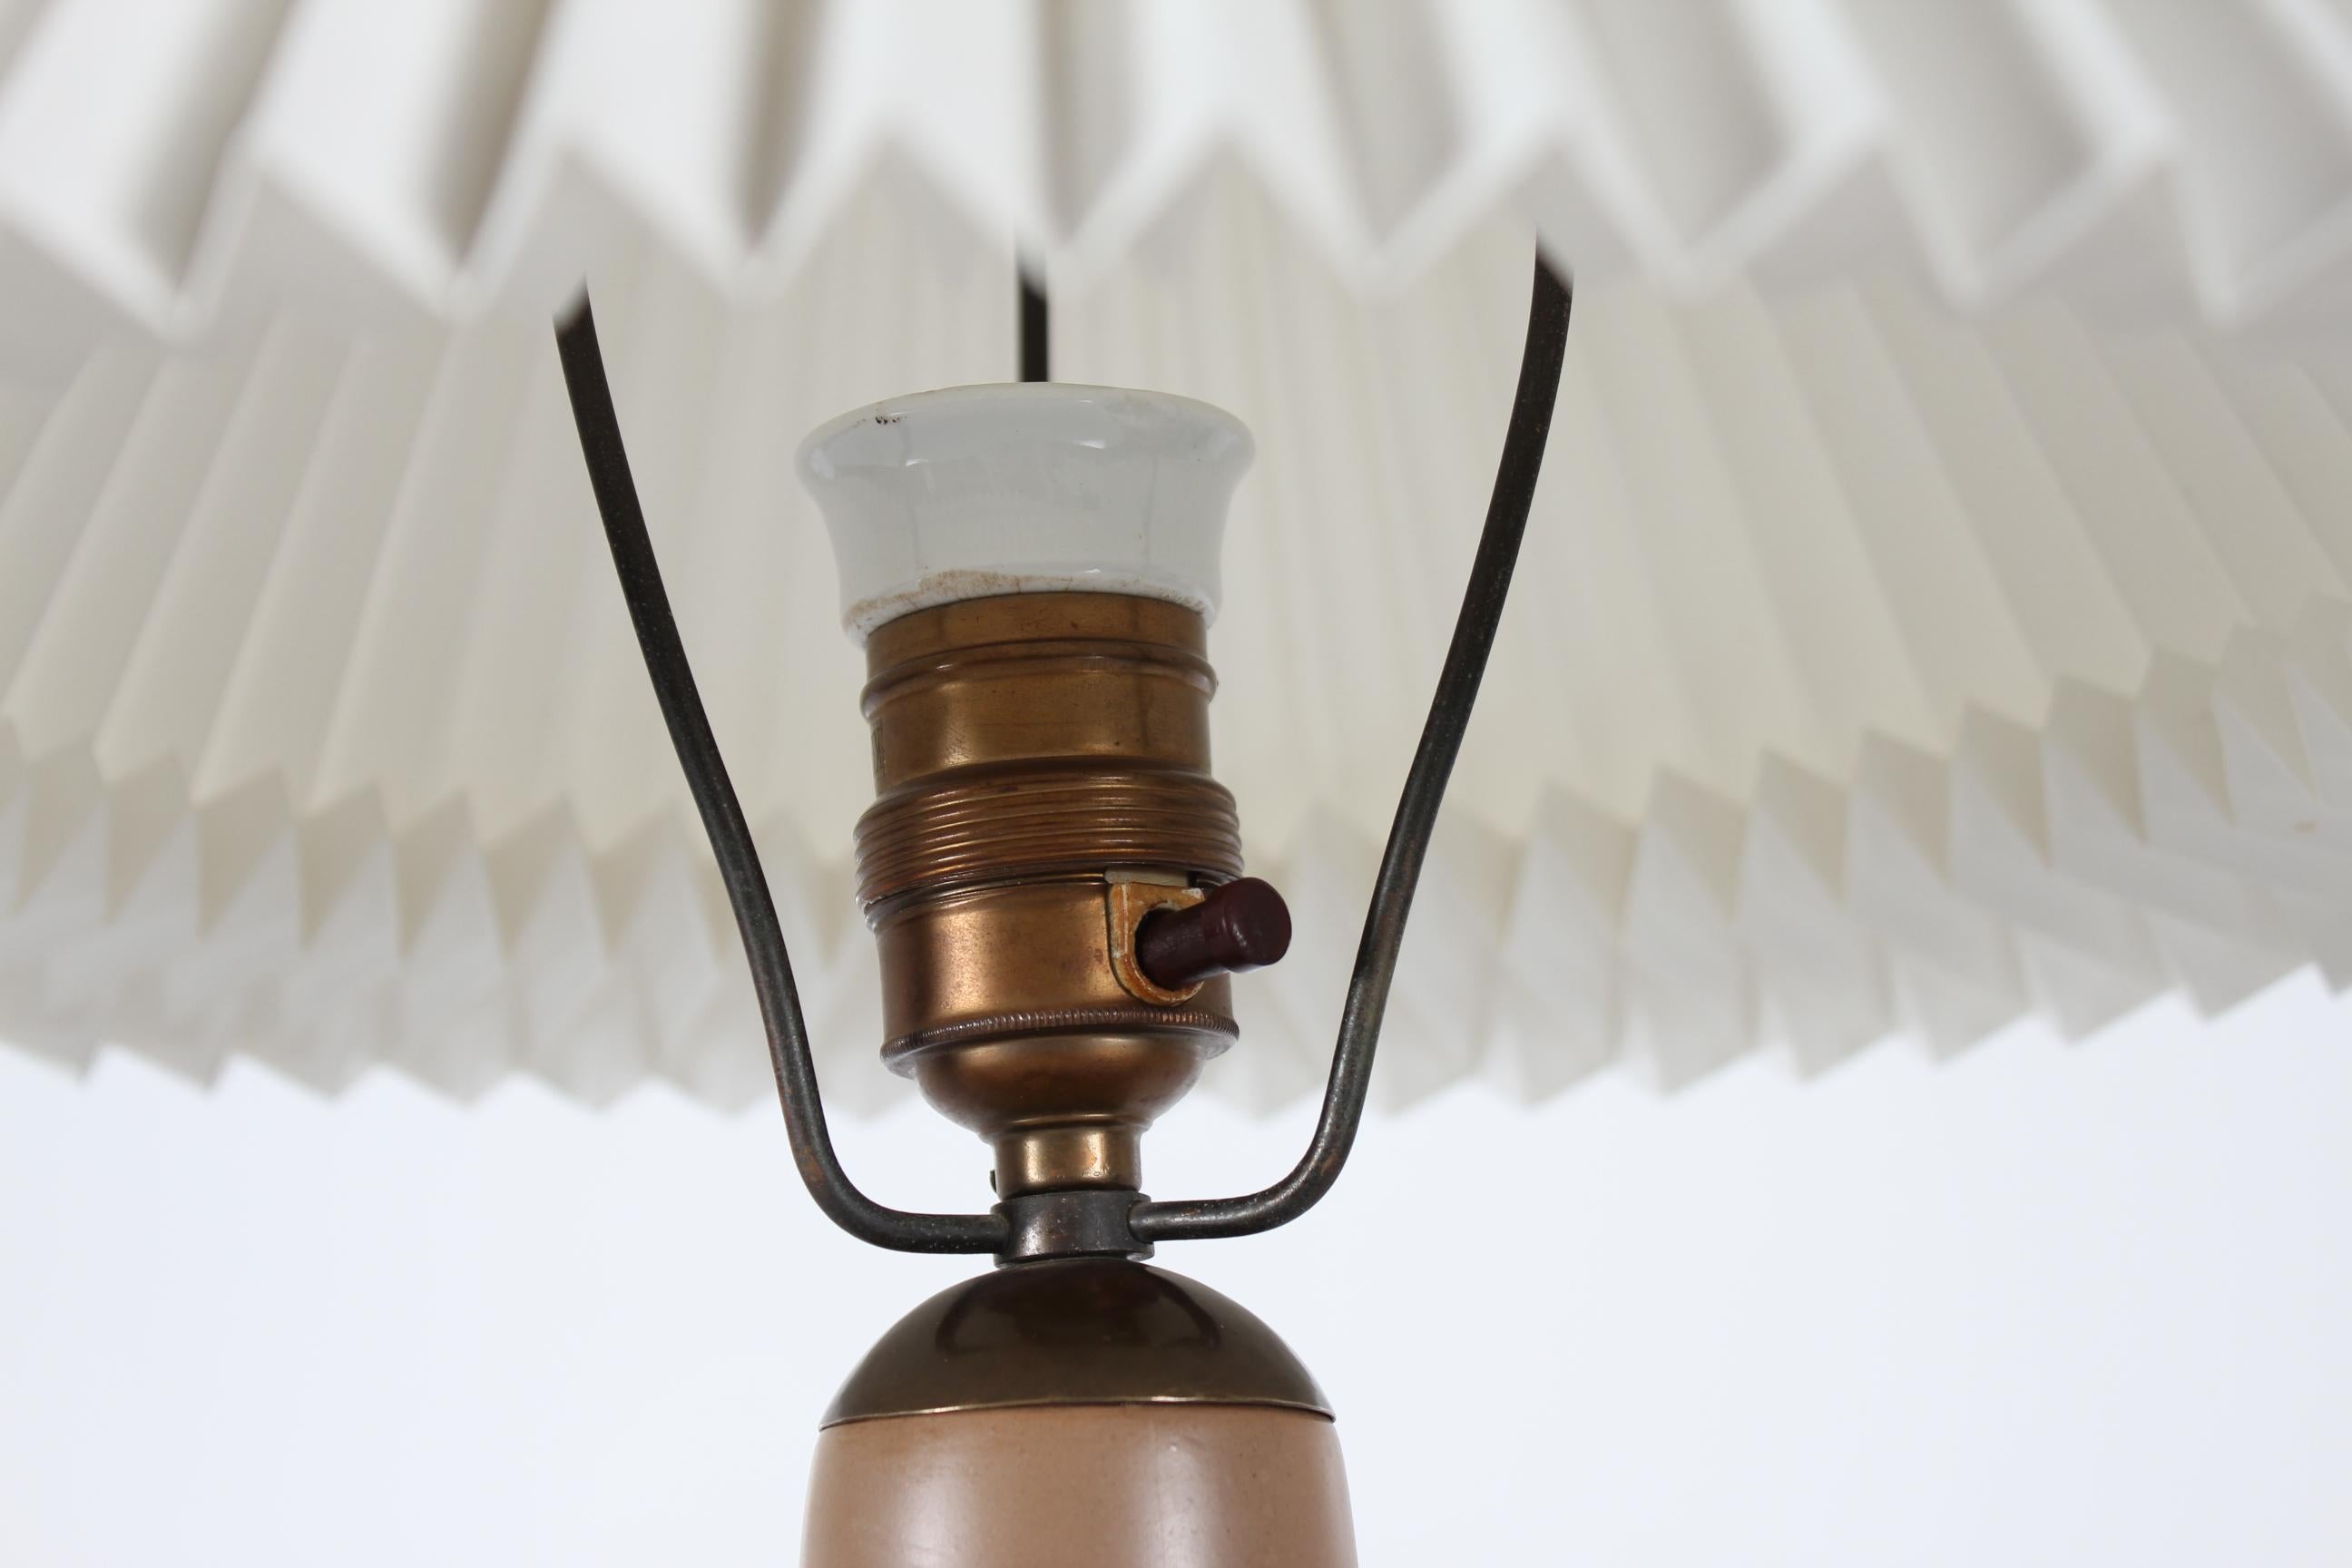 Lampe de table Art déco du studio de céramique danois L. Hjorth sur l'île de Bornholm.
La base de la lampe est en céramique brun moka clair, décorée de deux canards nageurs et de tiges. Les couleurs de la décoration sont le marron, le bleu verdâtre,